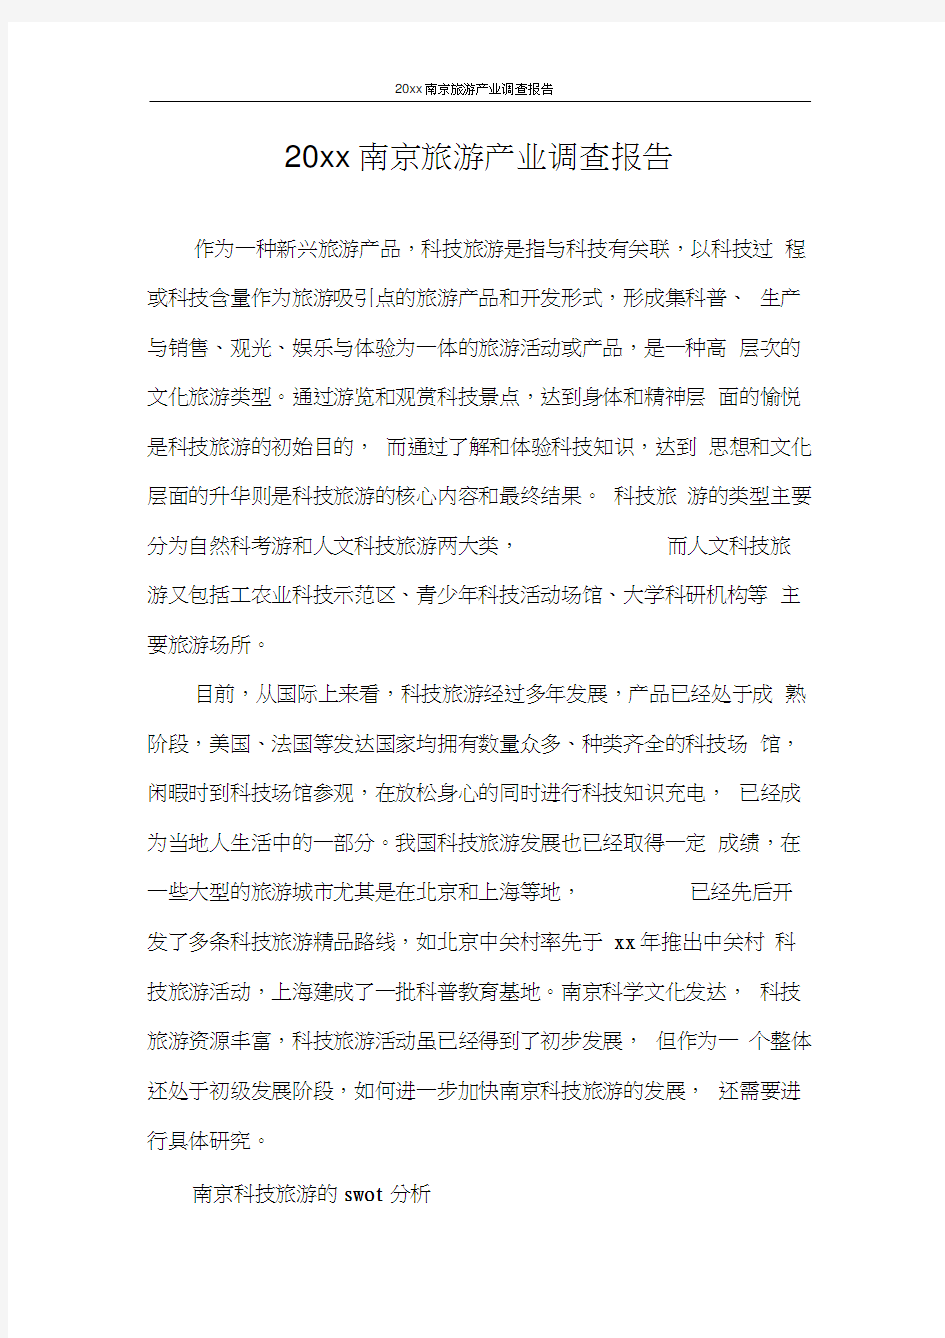 调查报告2020年南京旅游产业调查报告